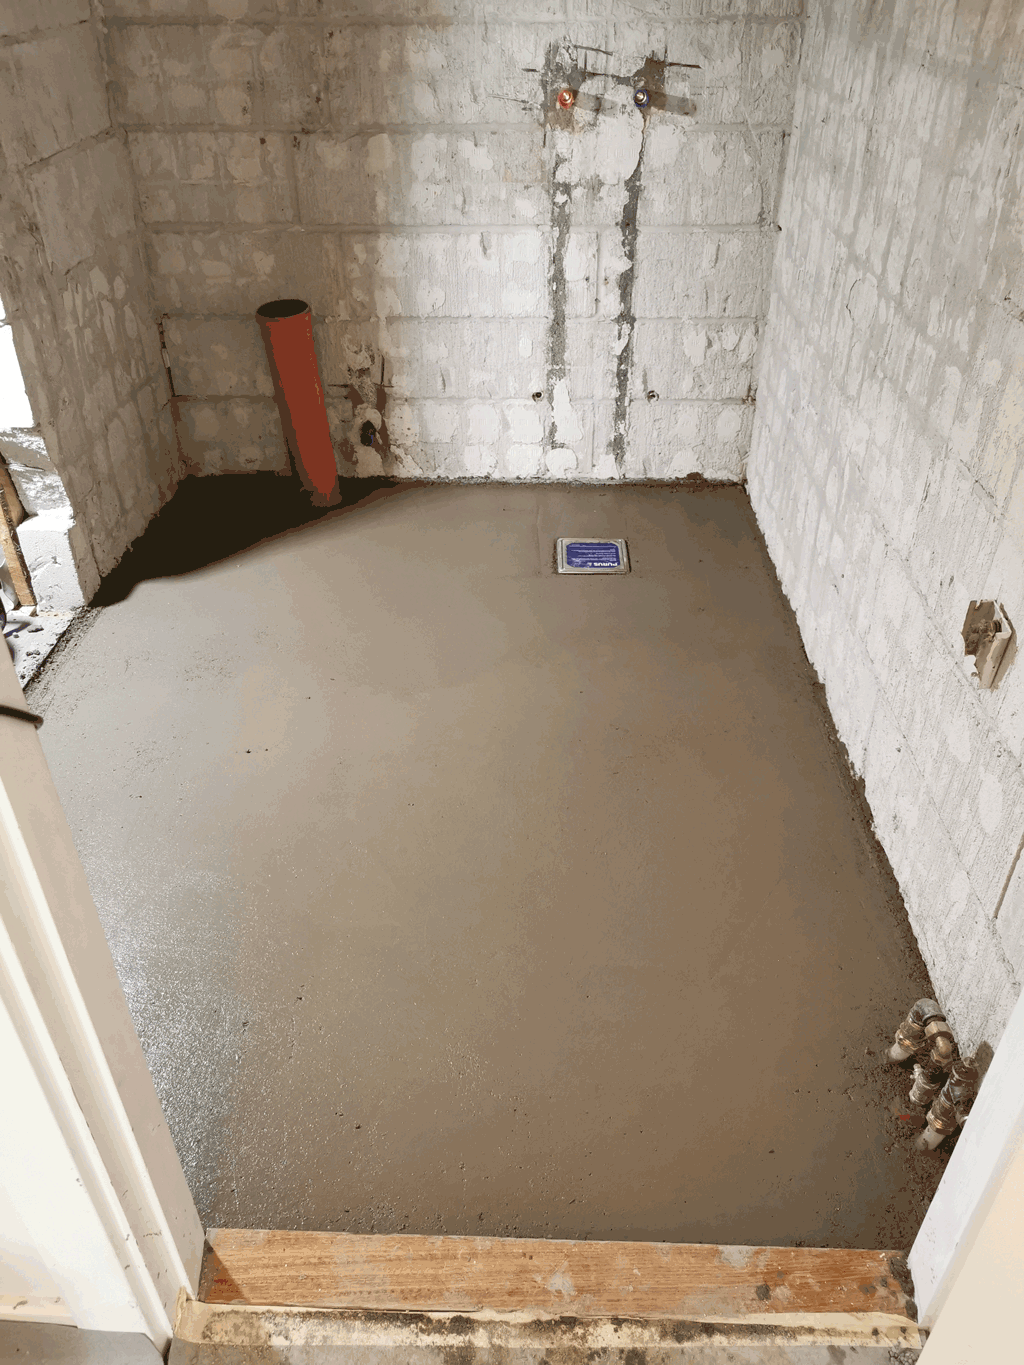 Badeværelsesrenovering. Badeværelset har fået støbt nyt beton gulvpå billedet ses det øverst lag beton som hedder slidlag.